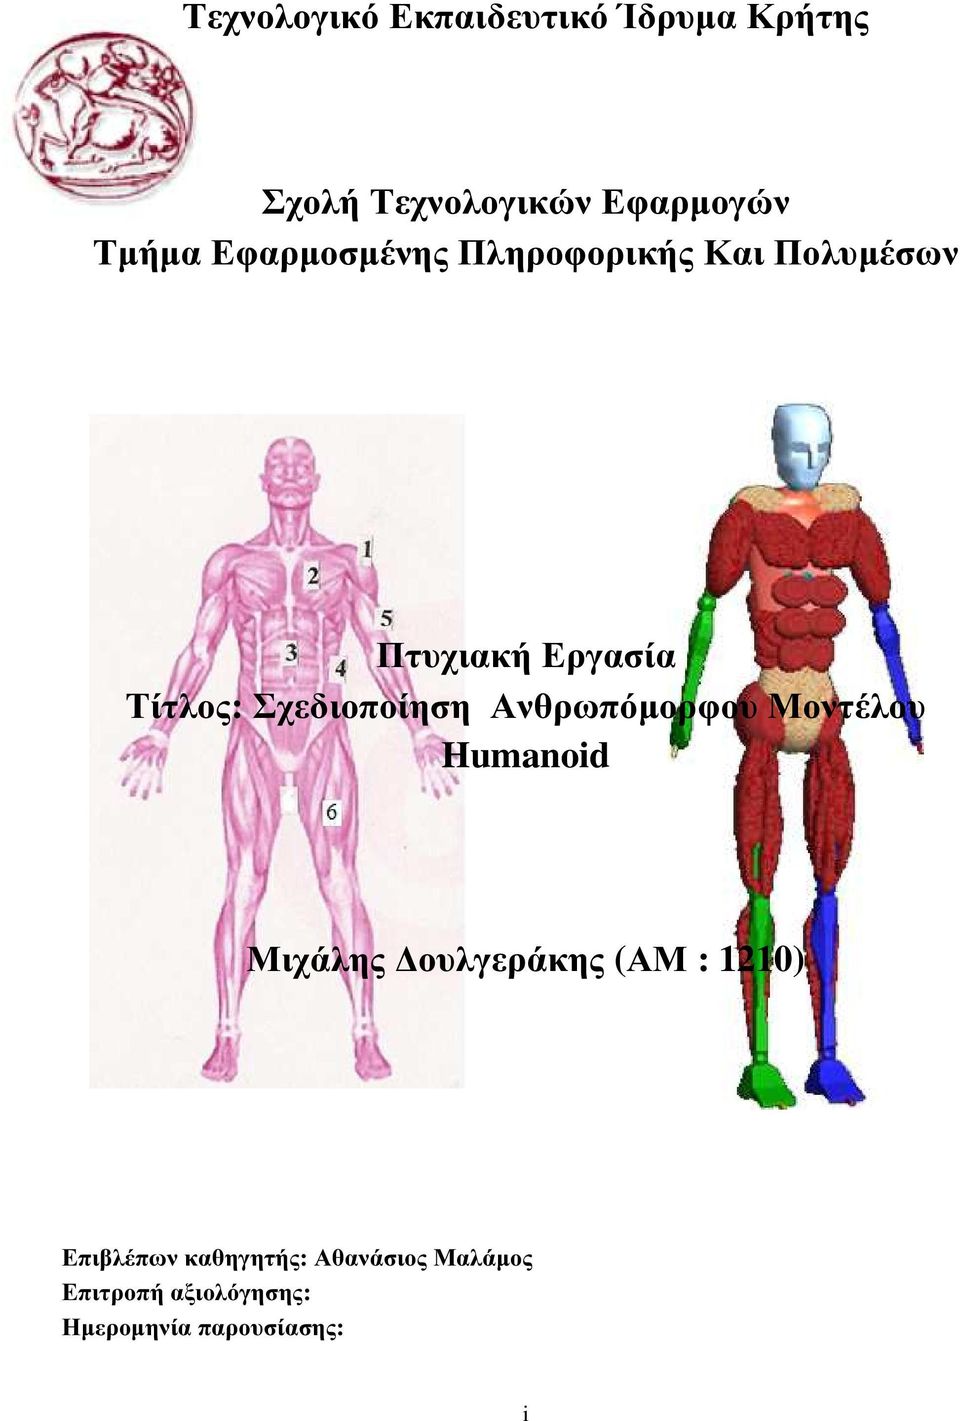 Σχεδιοποίηση Ανθρωπόµορφου Μοντέλου Humanoid Μιχάλης ουλγεράκης (ΑΜ : 1210)